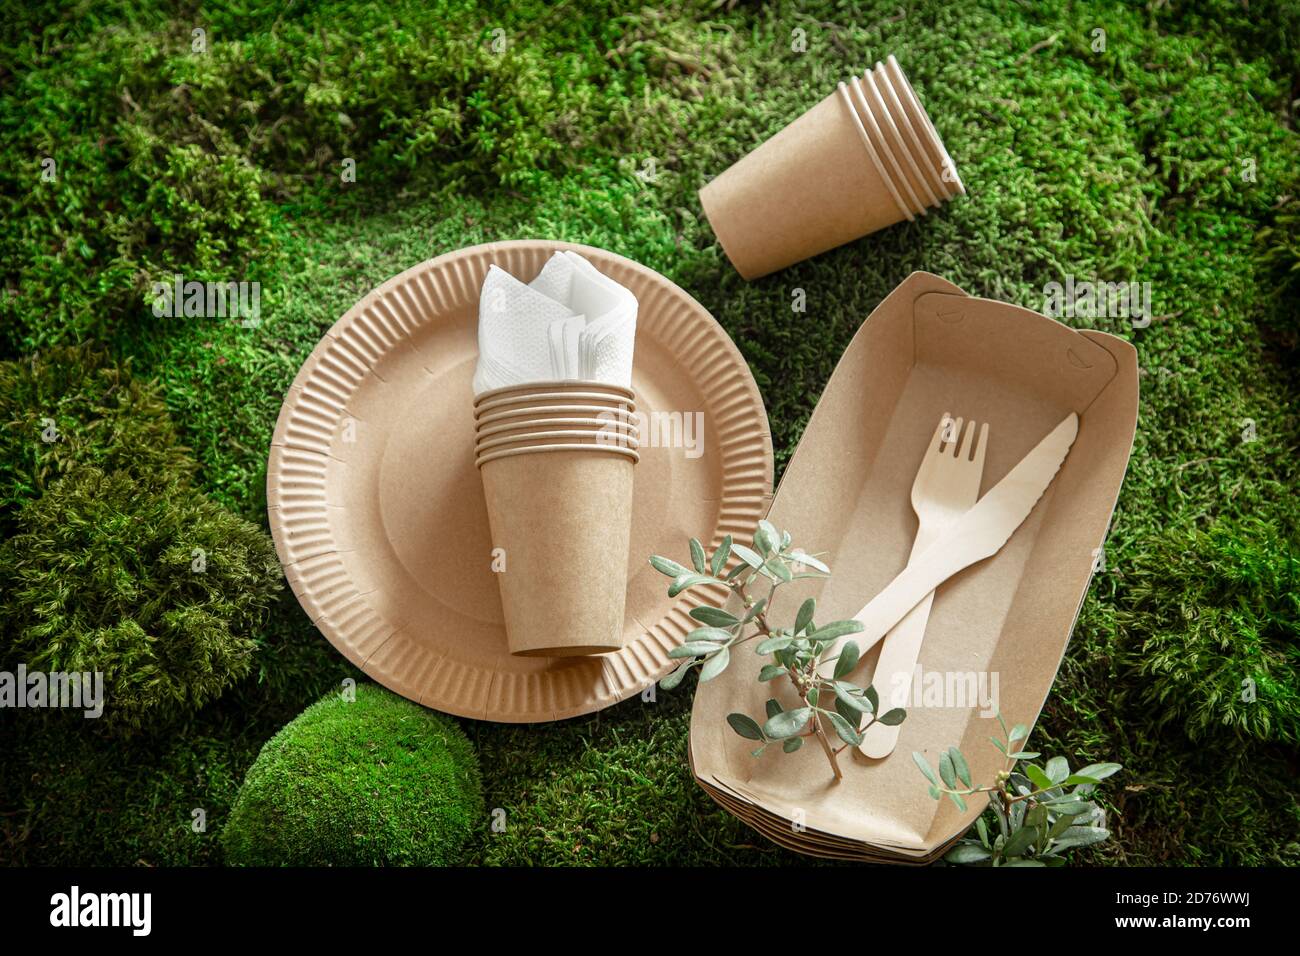 Umweltfreundliches, Einweg- und recycelbares Geschirr. Papier  Lebensmittel-Boxen, Teller und Besteck von Maisstärke auf einem grünen Gras  Hintergrund Stockfotografie - Alamy